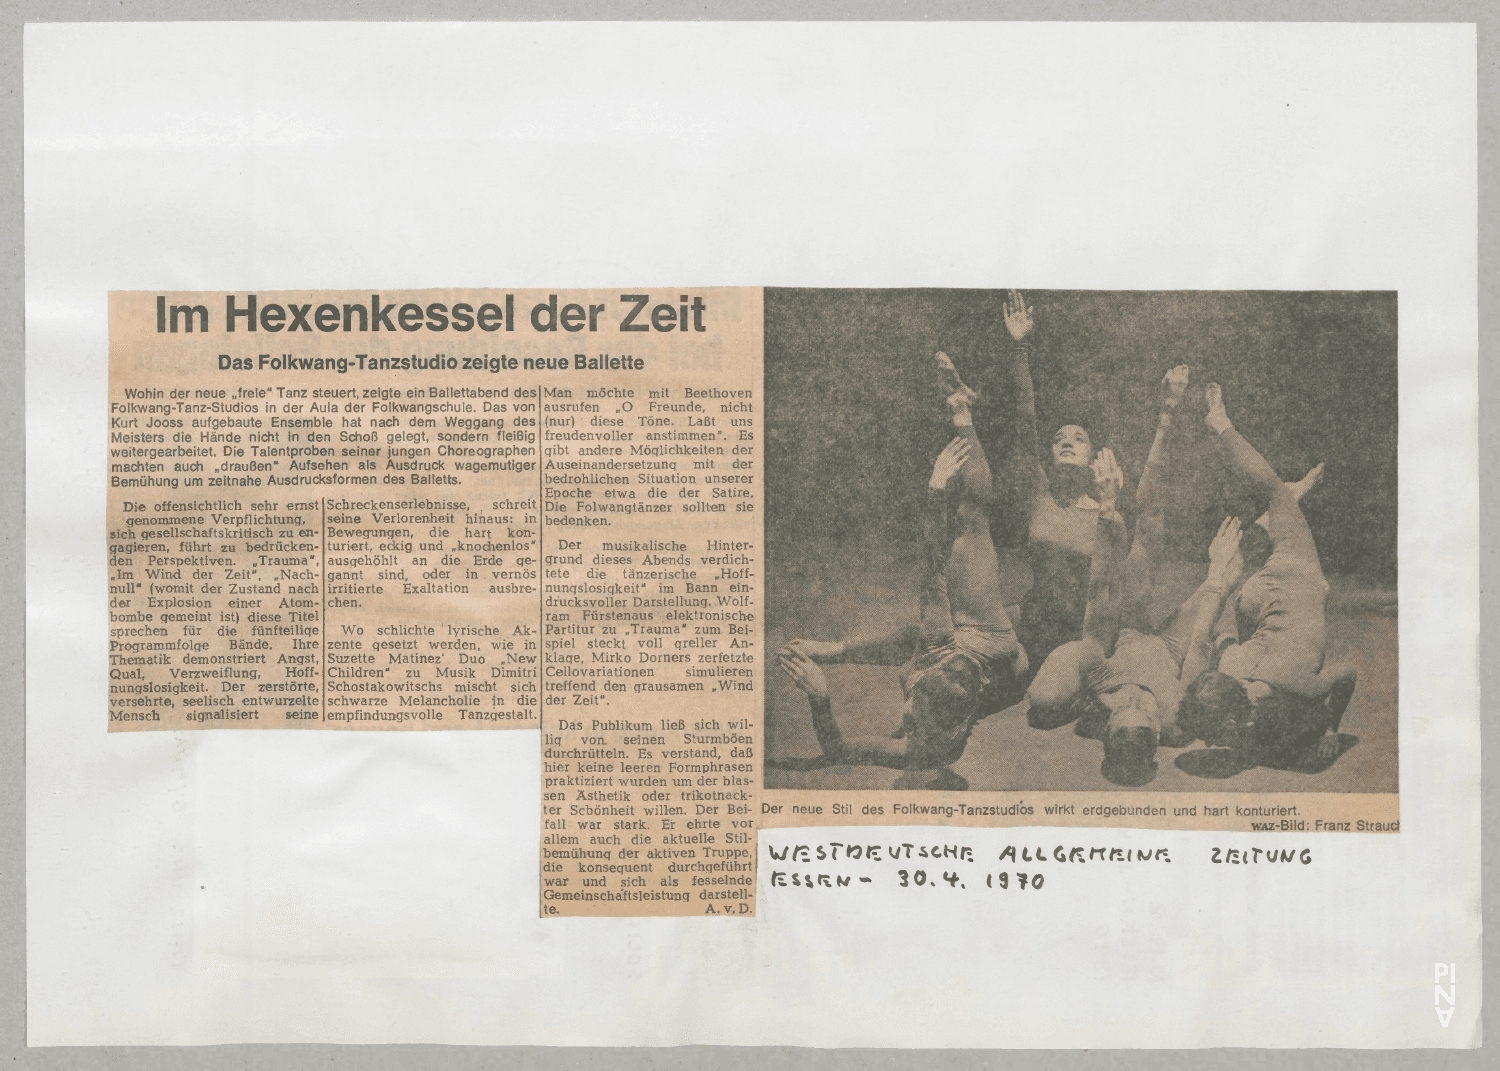 Im Hexenkessel der Zeit – Arthur van Dyck, Westdeutsche Allgemeine Zeitung